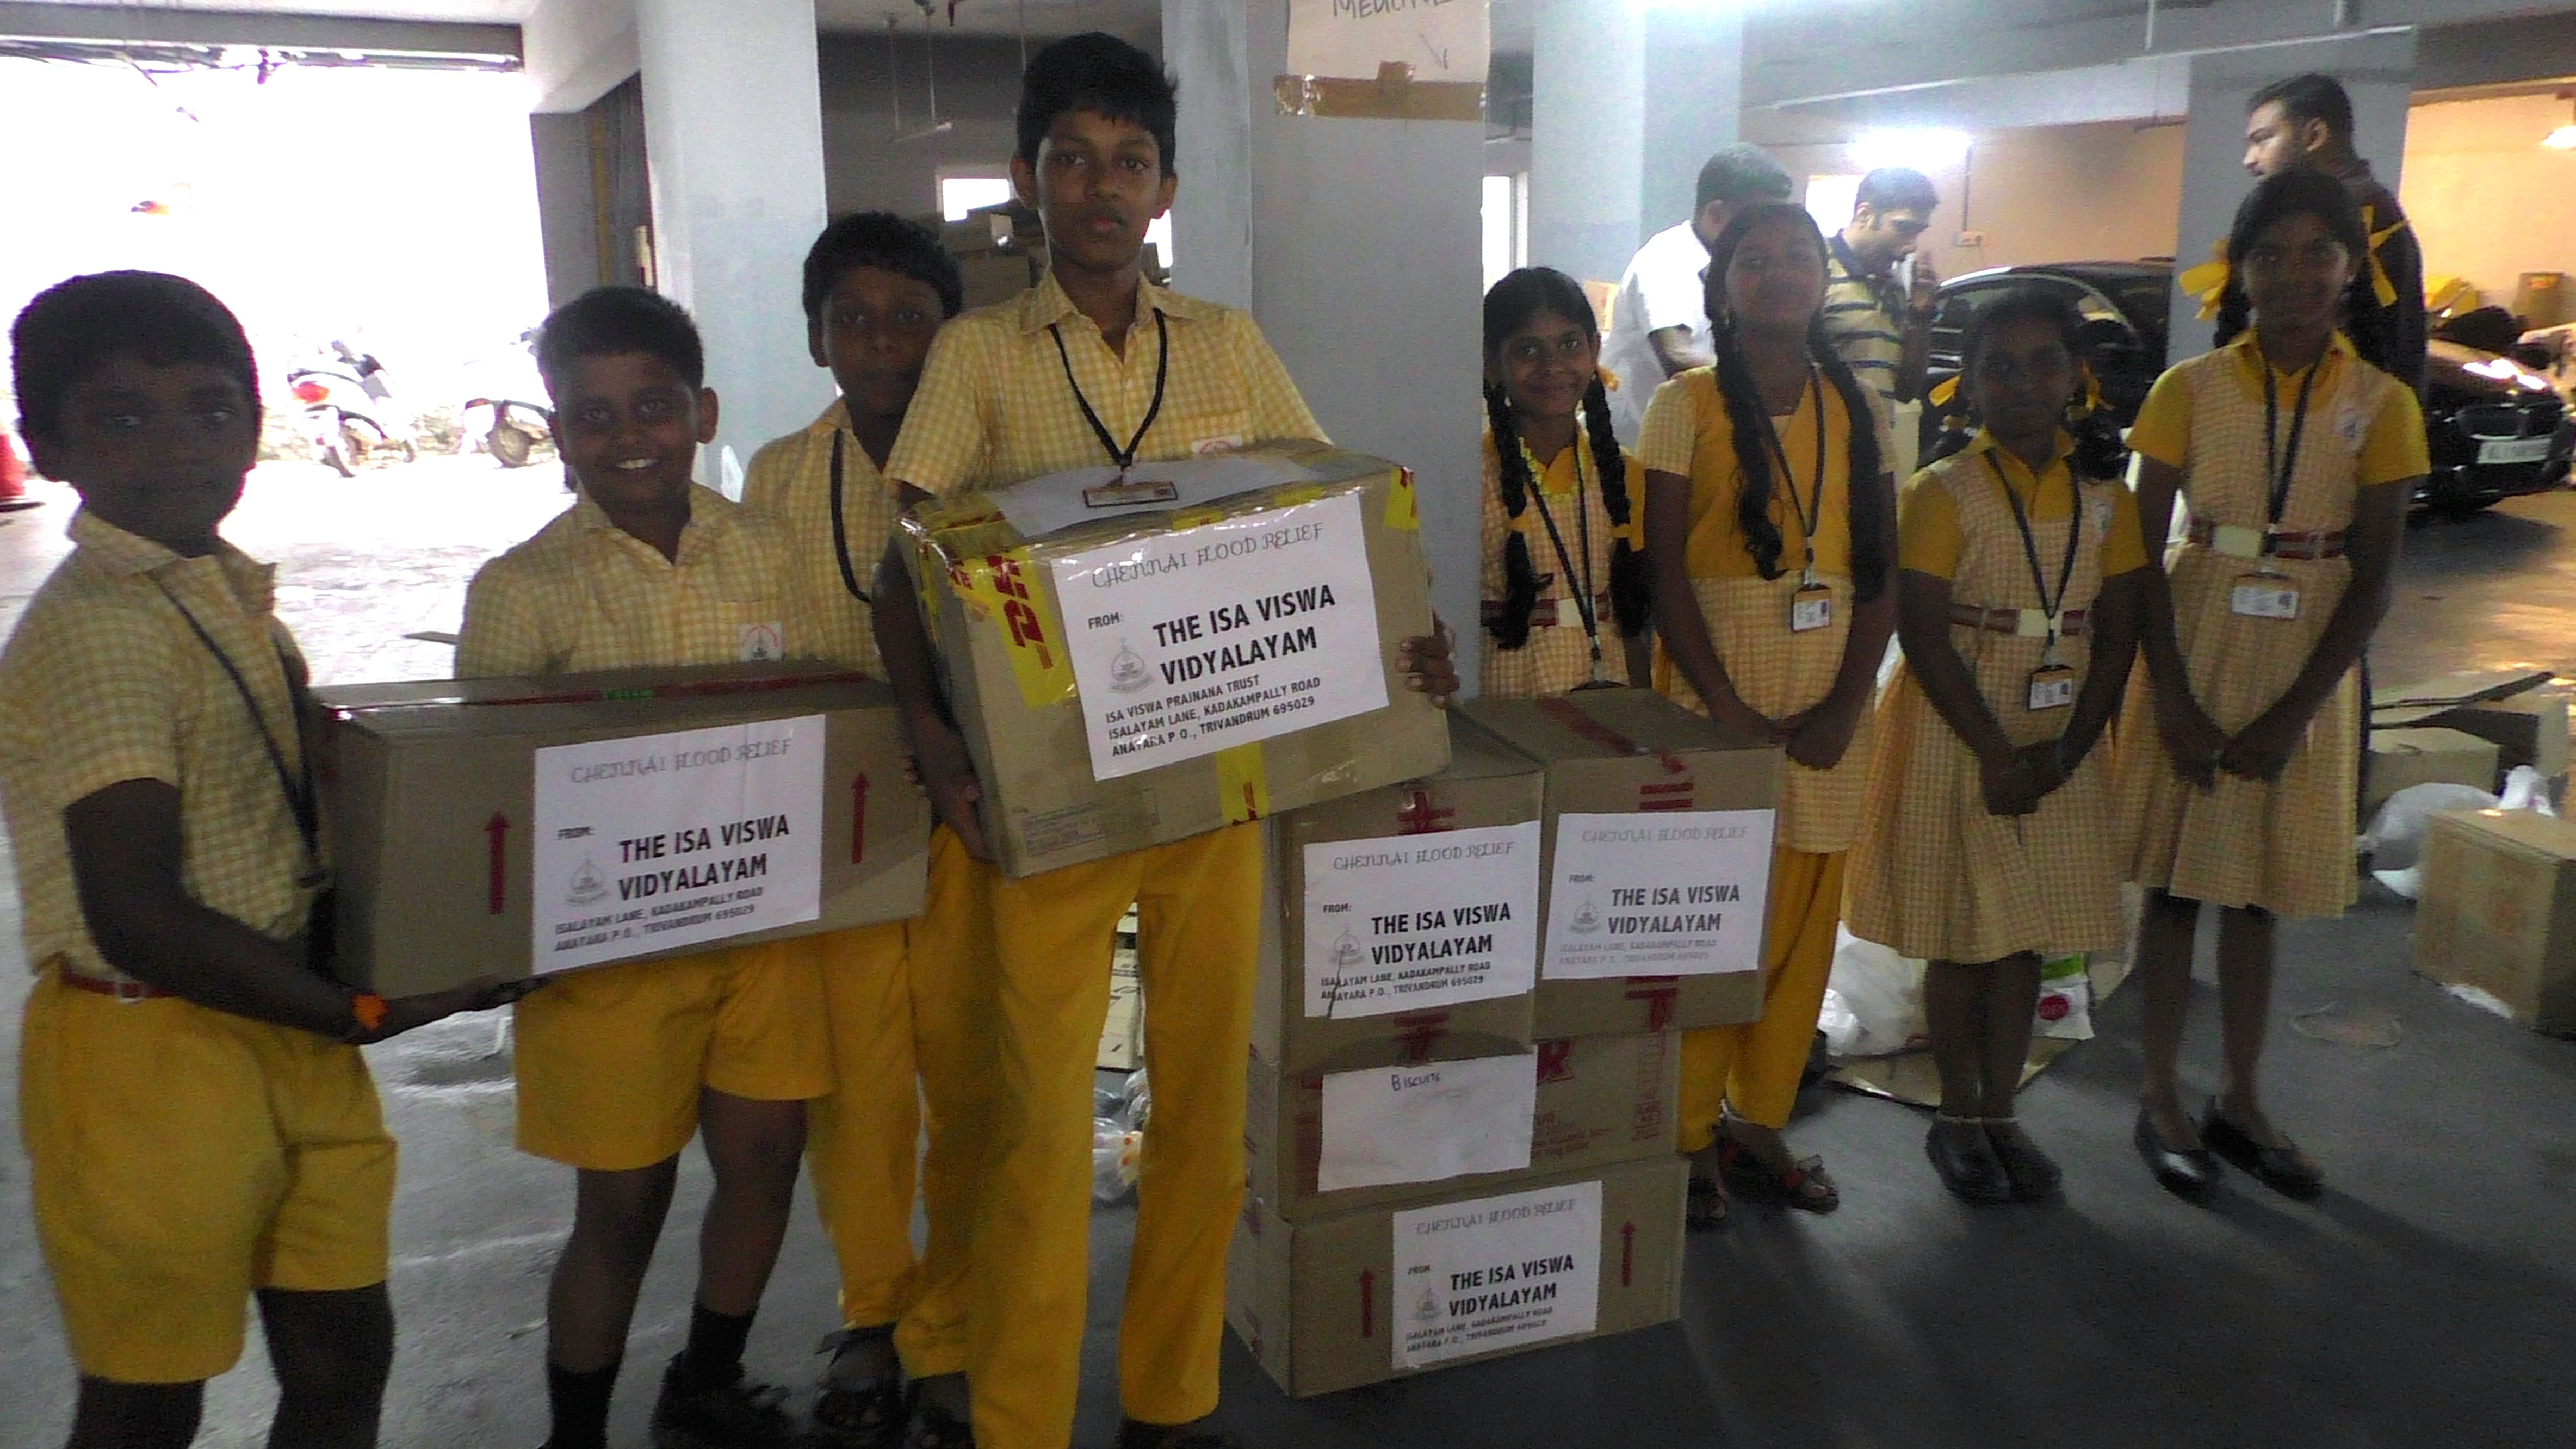 Students of Isa Viswa Vidyalayam giving food to Chennai flood relief efforts